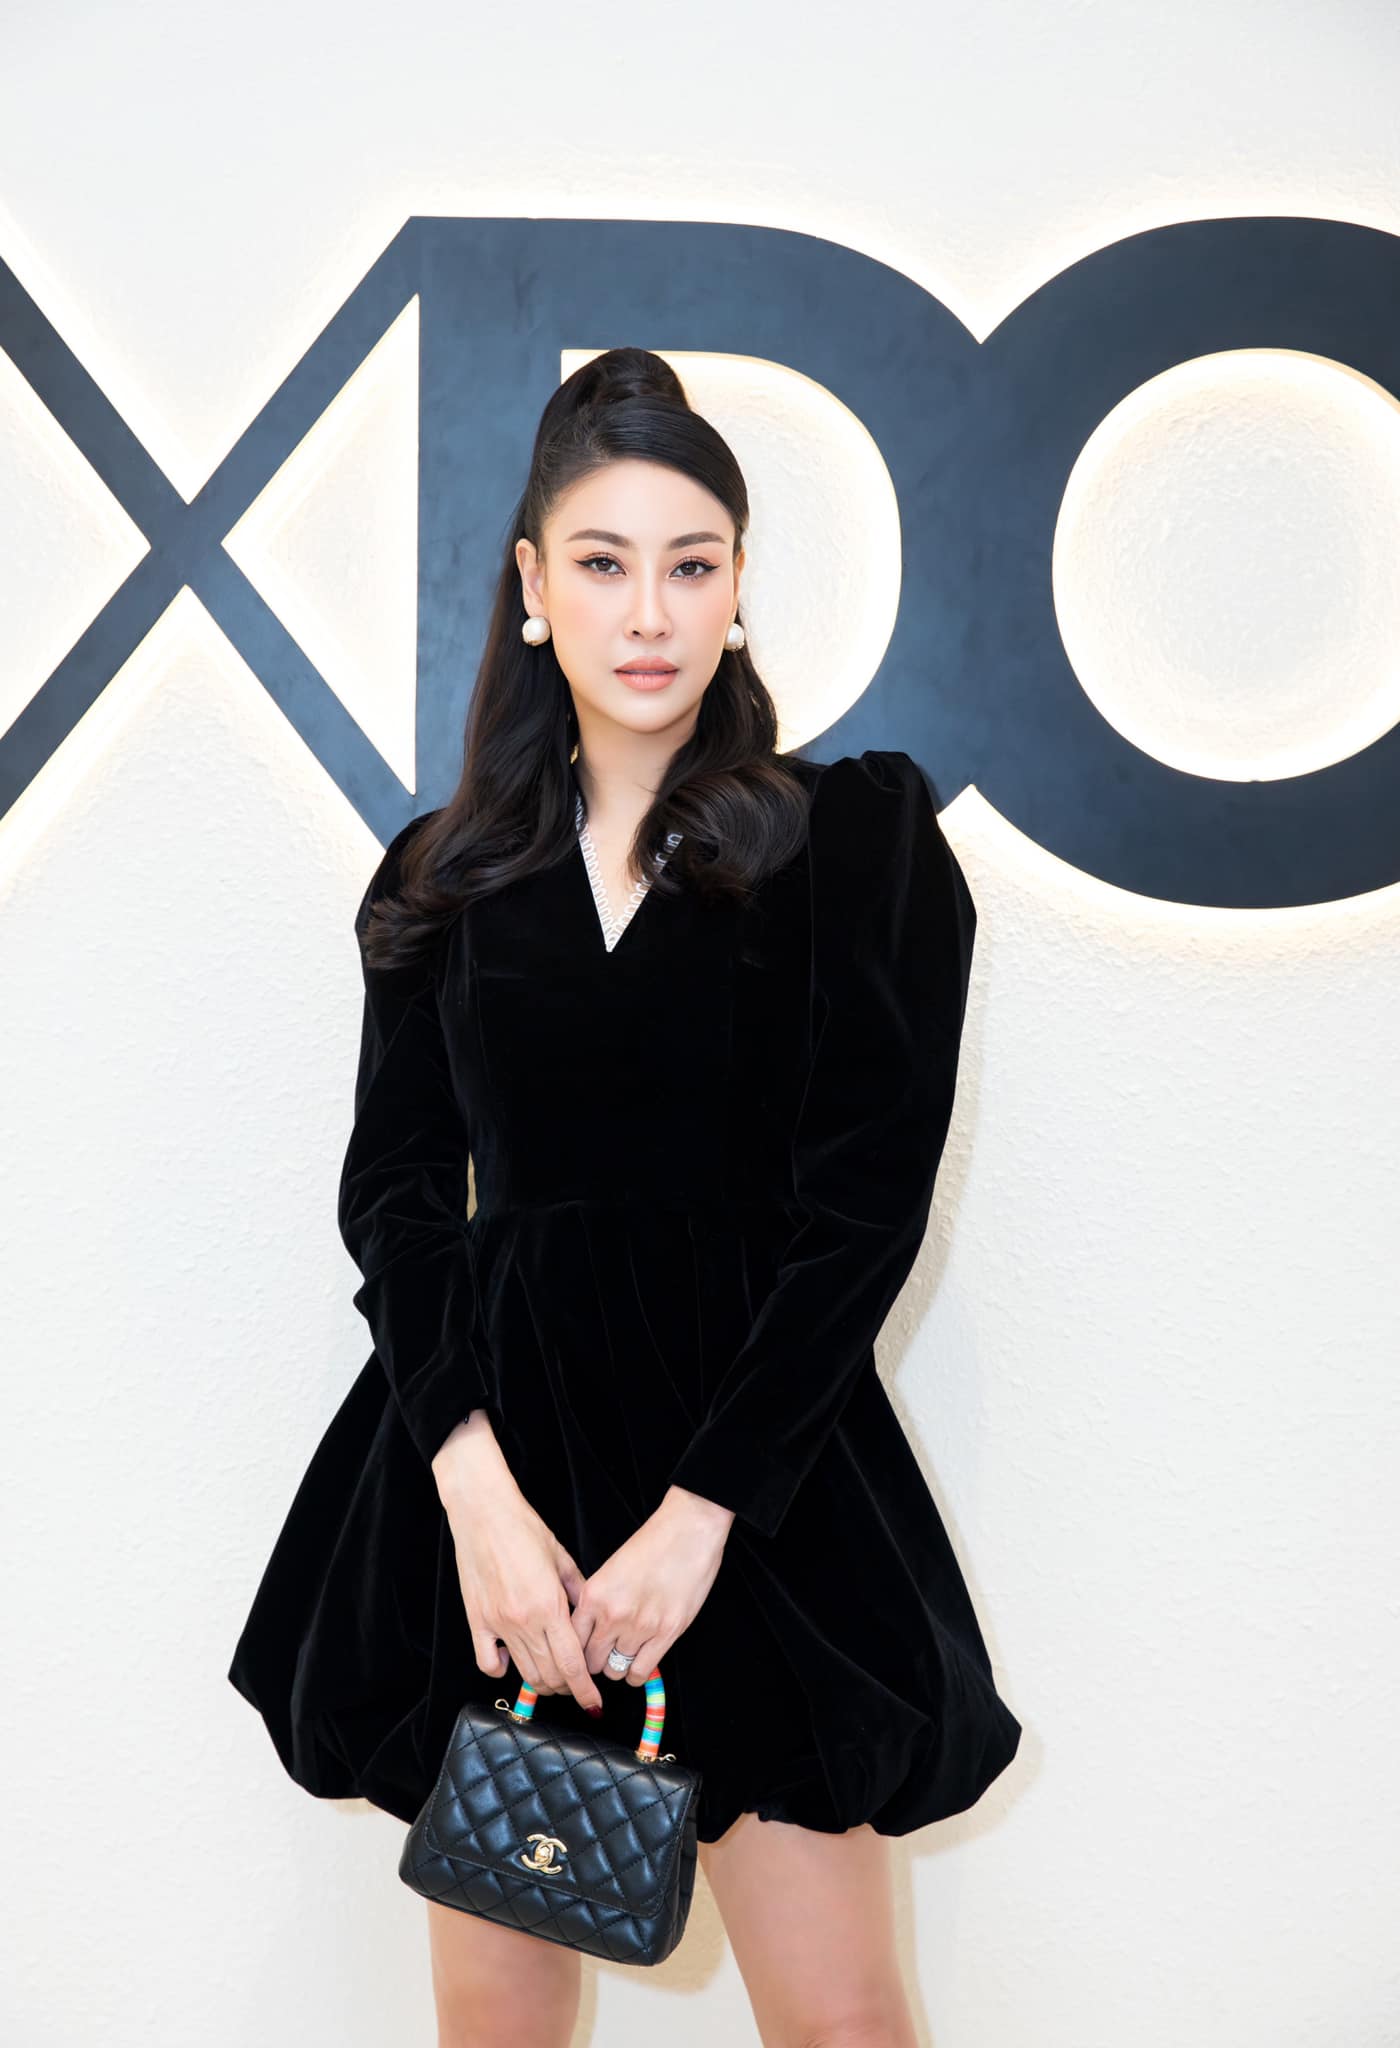 Xuất hiện trong sự kiện gần đây, Hoa hậu Hà Kiều Anh gây bất ngờ vì ngoại hình trẻ trung không tuổi. Người đẹp lên đồ vừa cá tính vừa sang chảnh với mẫu váy nhung ngắn màu đen.